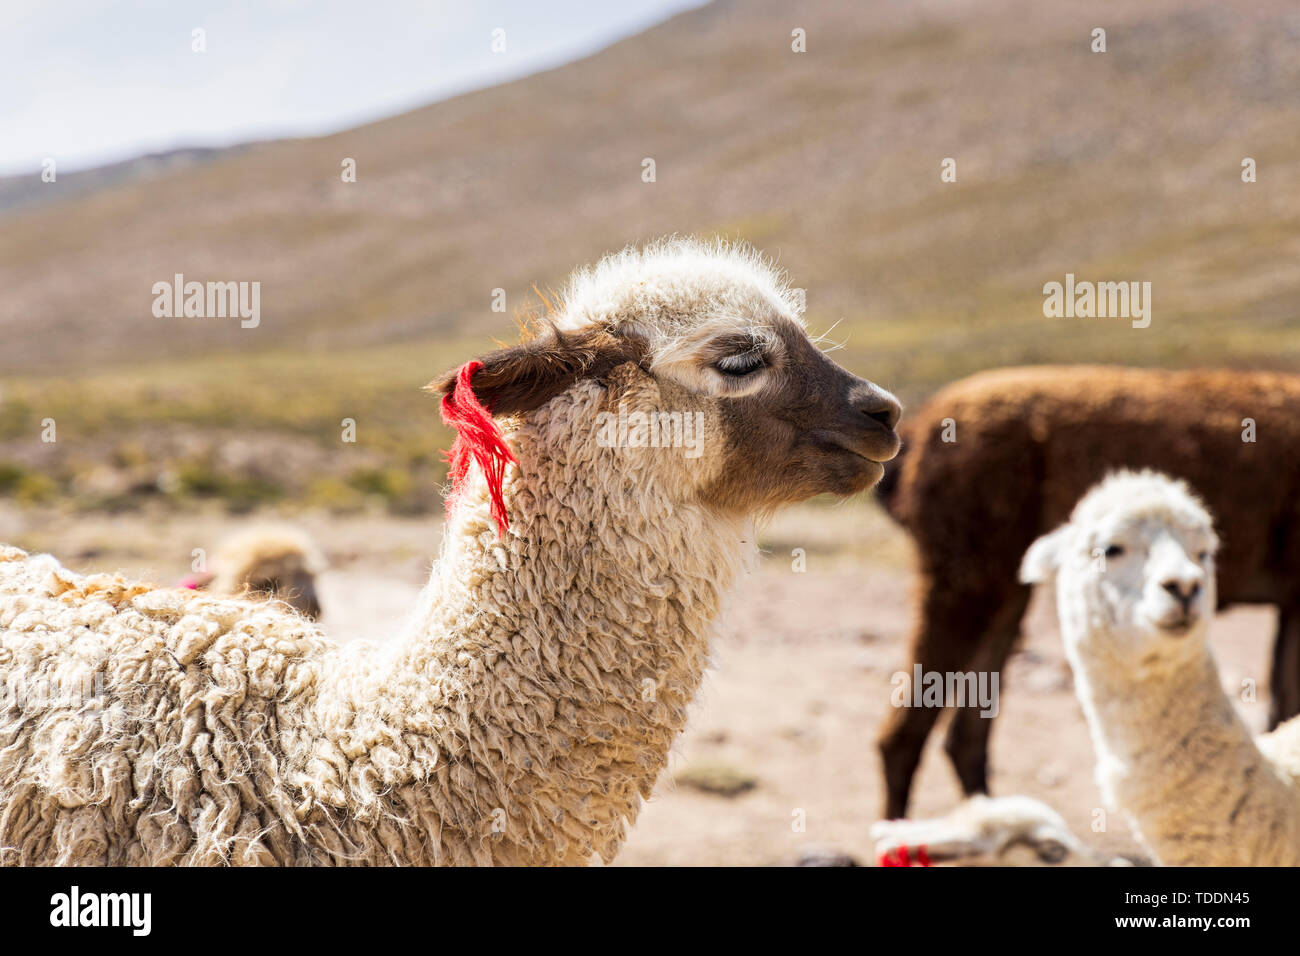 Llamas, Lama glama, in the Reserva Nacional de Salinas y Aguada Blanca, Arequipa, Peru, Stock Photo